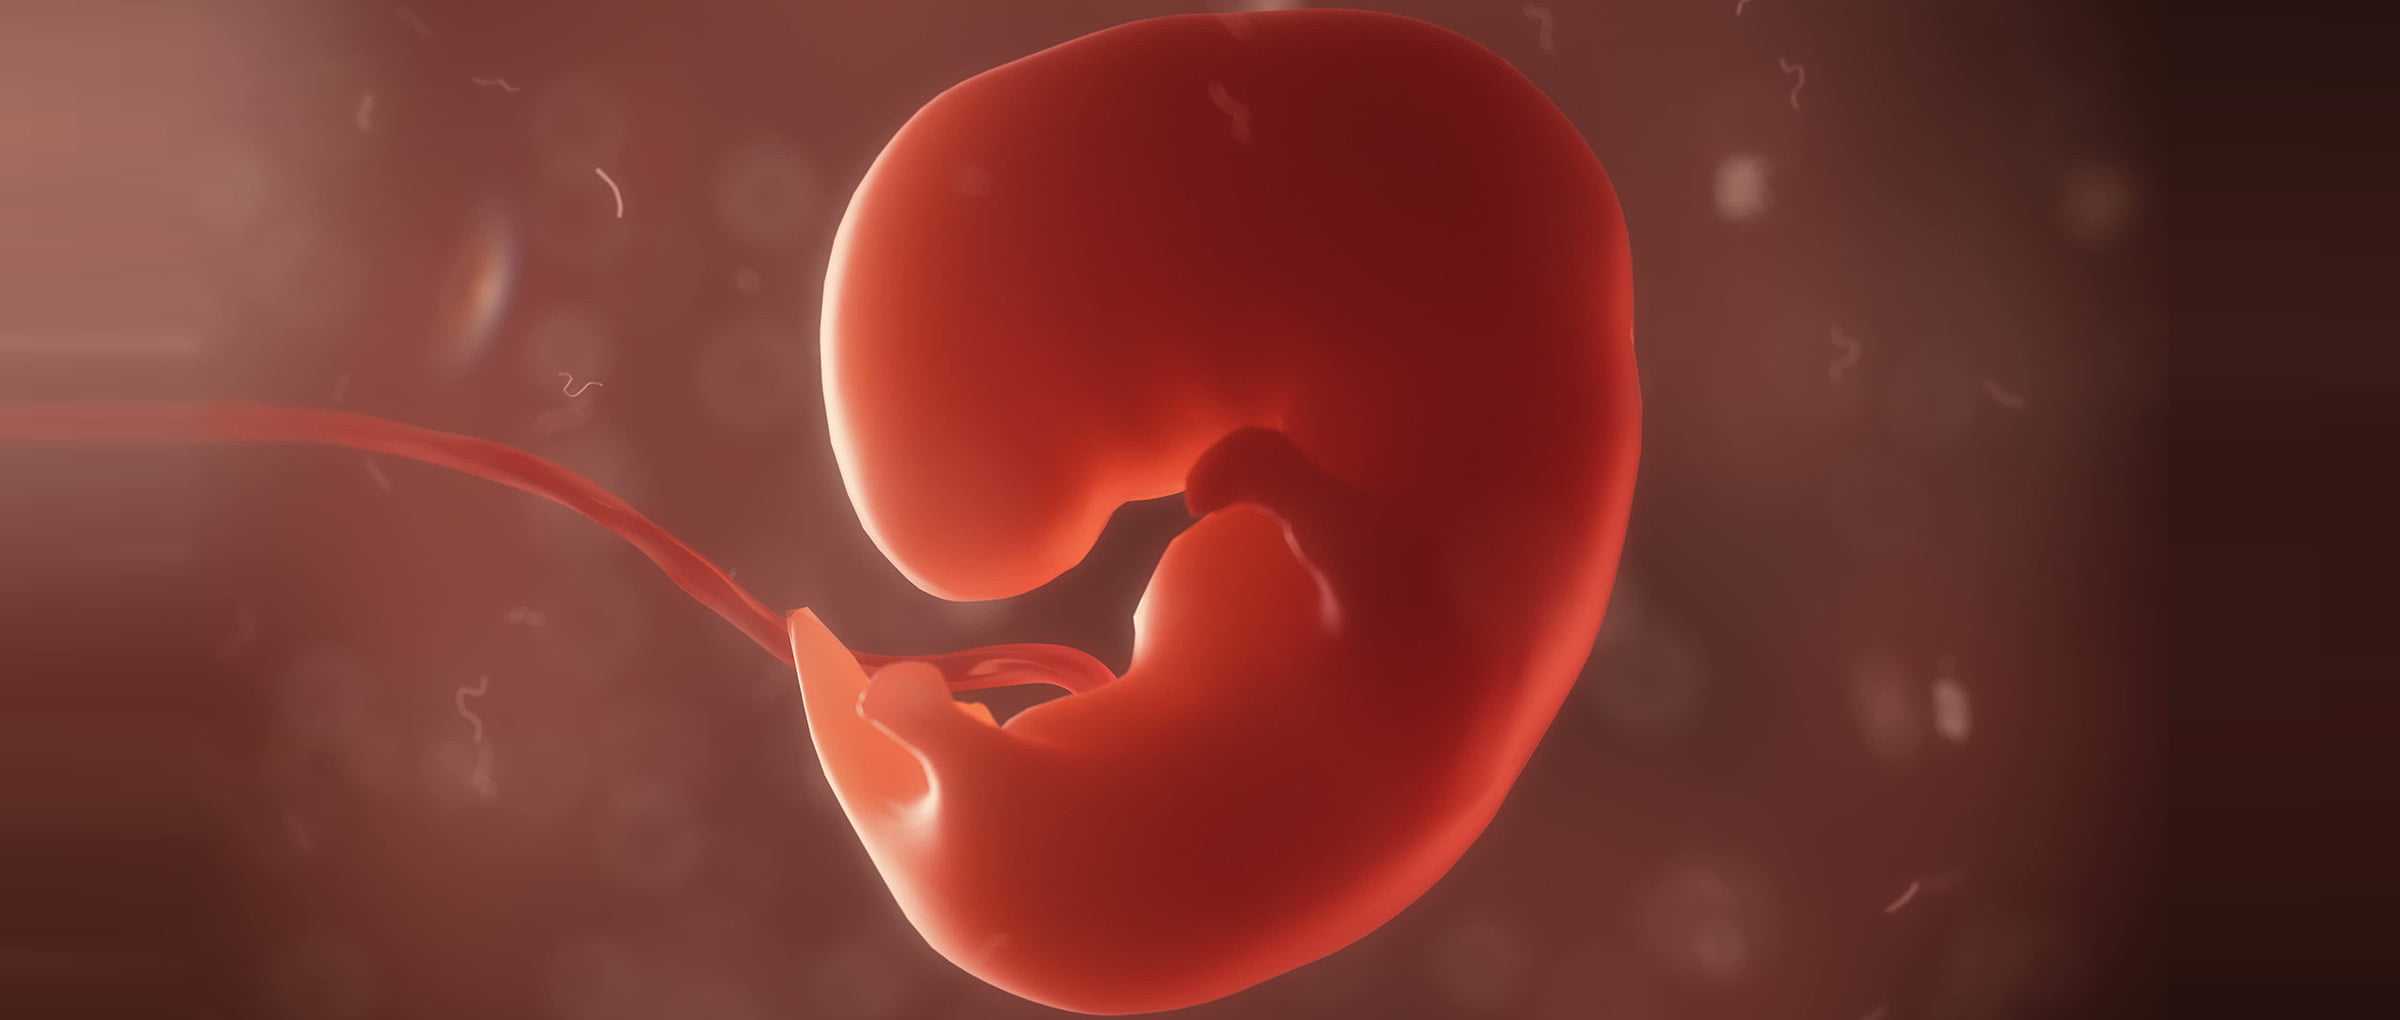 Внутриутробная инфекция: причины и последствия для новорожденного, какие бывают инфекции плода при беременности, признаки и анализы